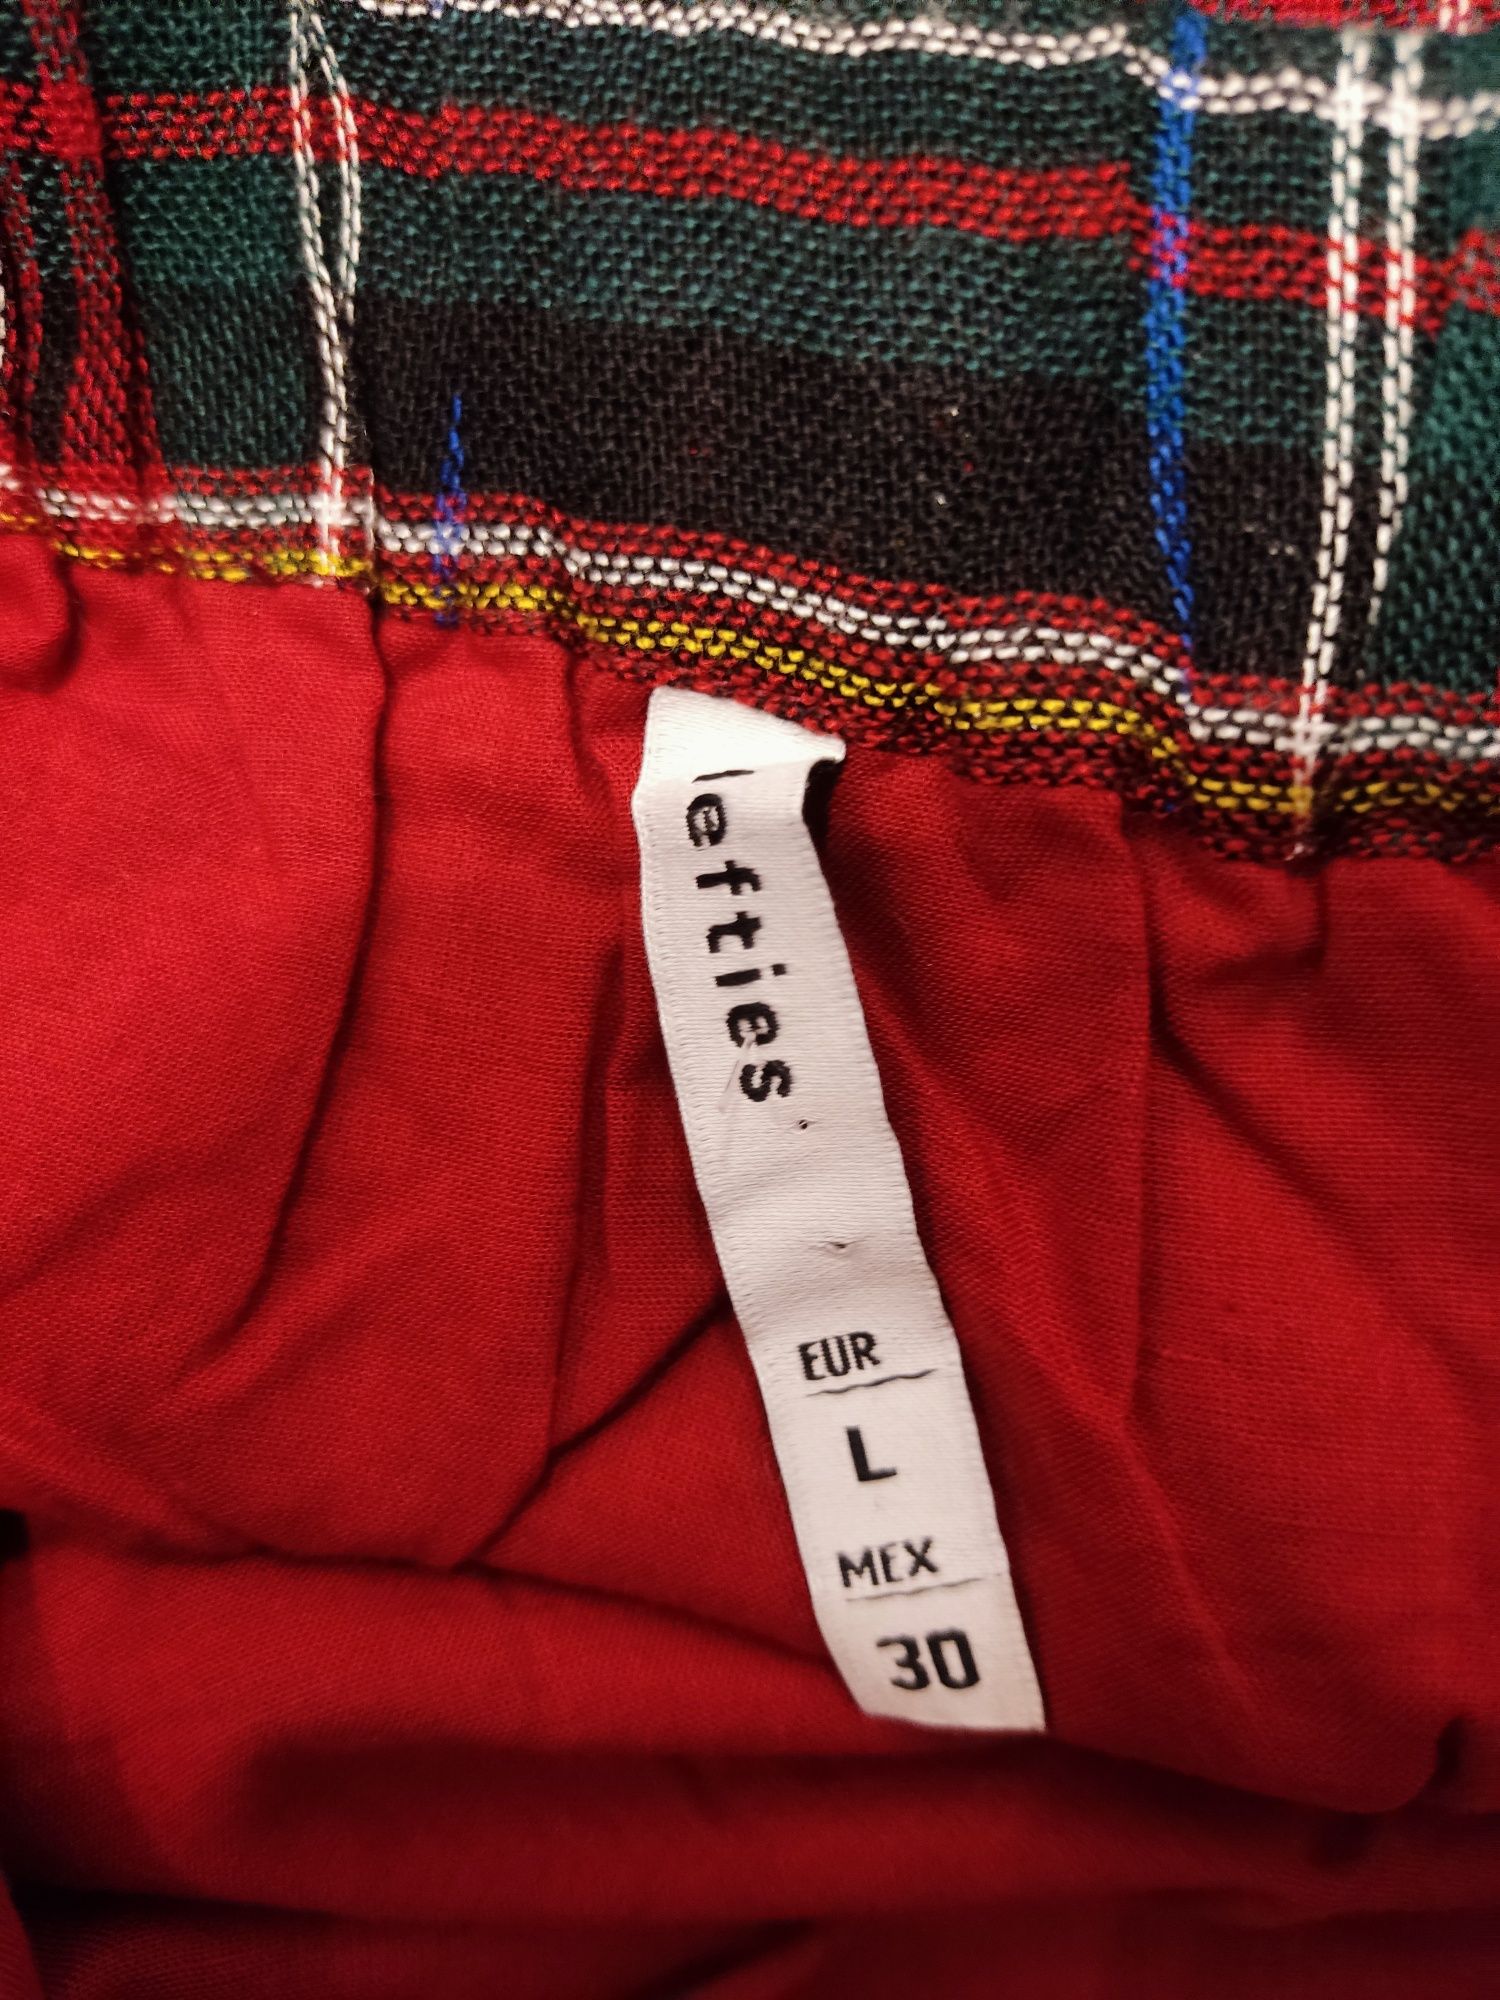 Spódnica mini w kratkę L 40 świąteczna spódniczka czerwona na gumce